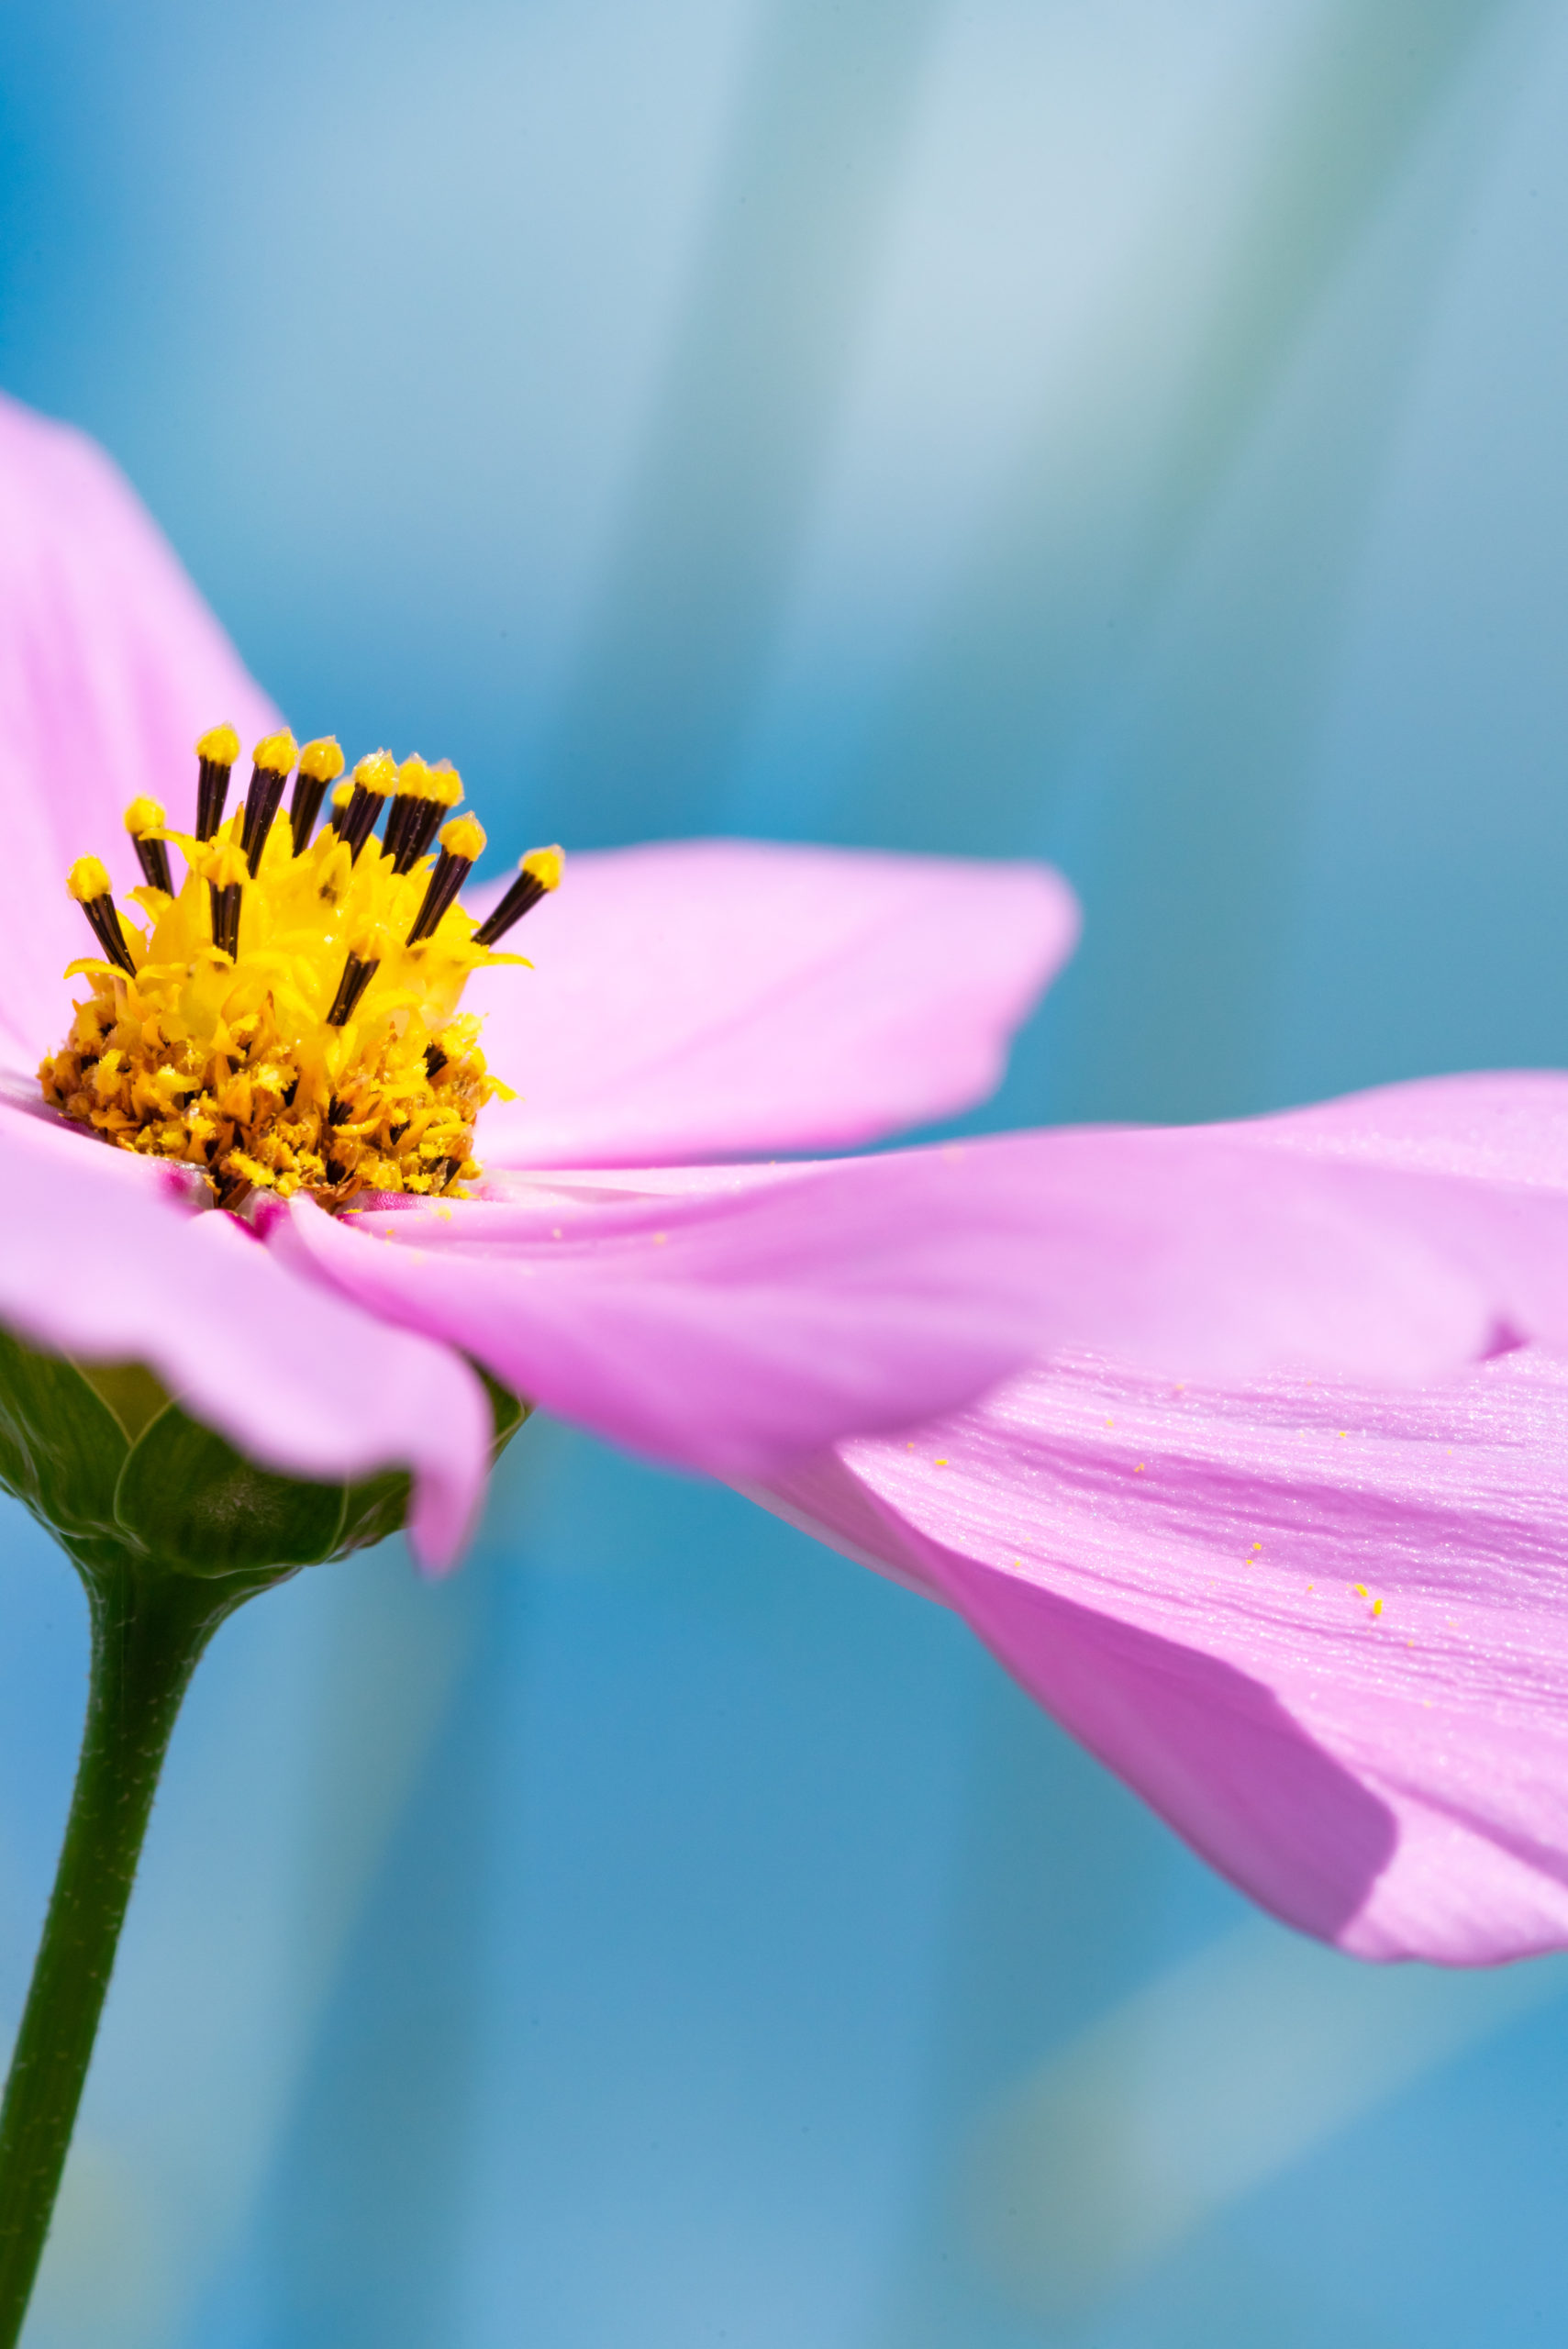 もしミツバチとコスモスを撮りたい場合、ミツバチは2~3日晴天が続く前日に飛ぶ習性があるので天気予報で週間天気を見ておくと撮影チャンスを見つけられます。